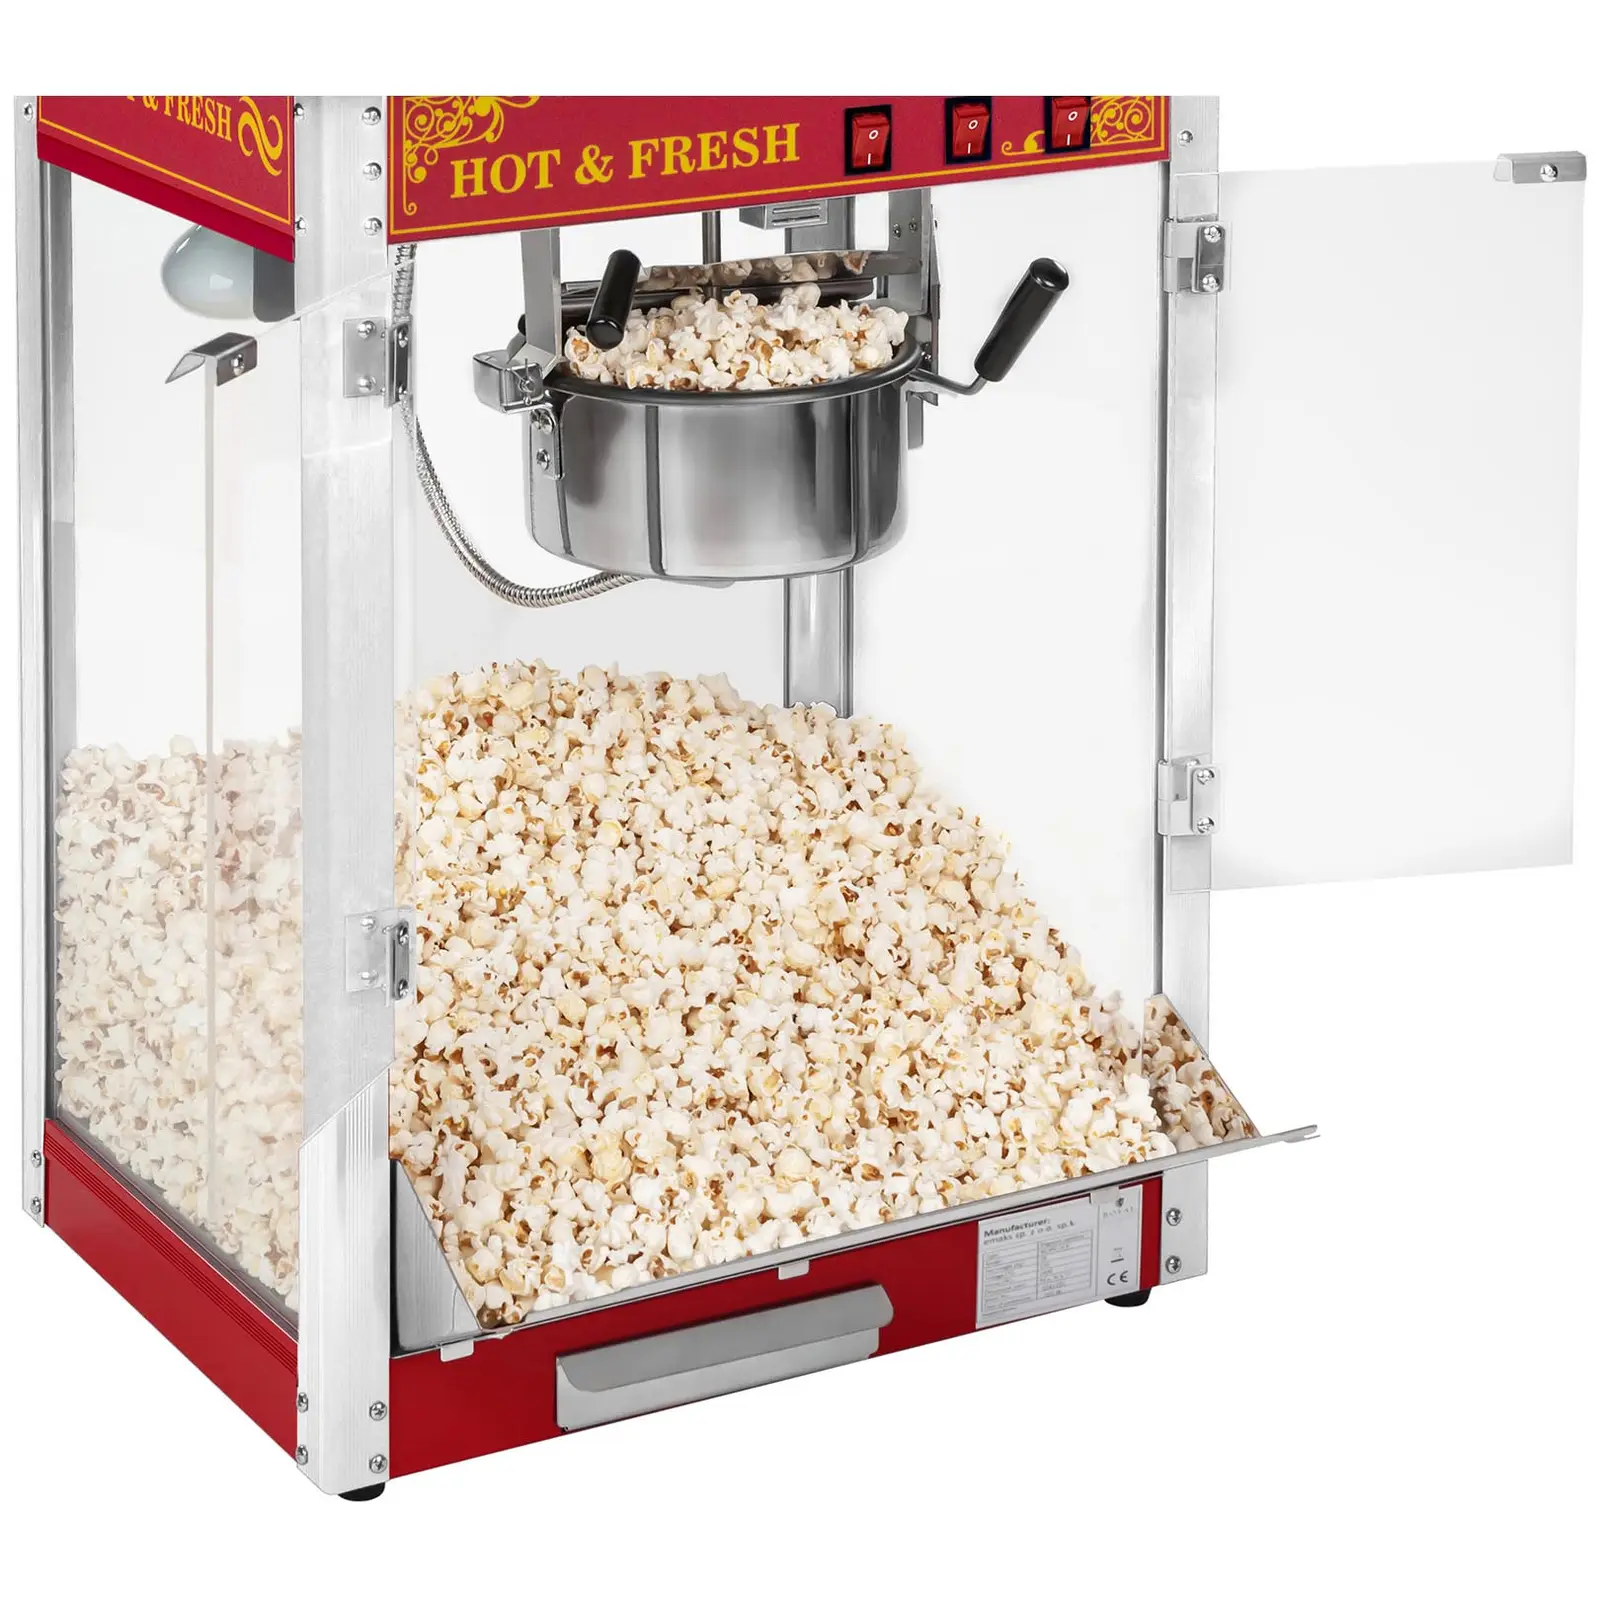 Stroj na popcorn s vozíkom - červený